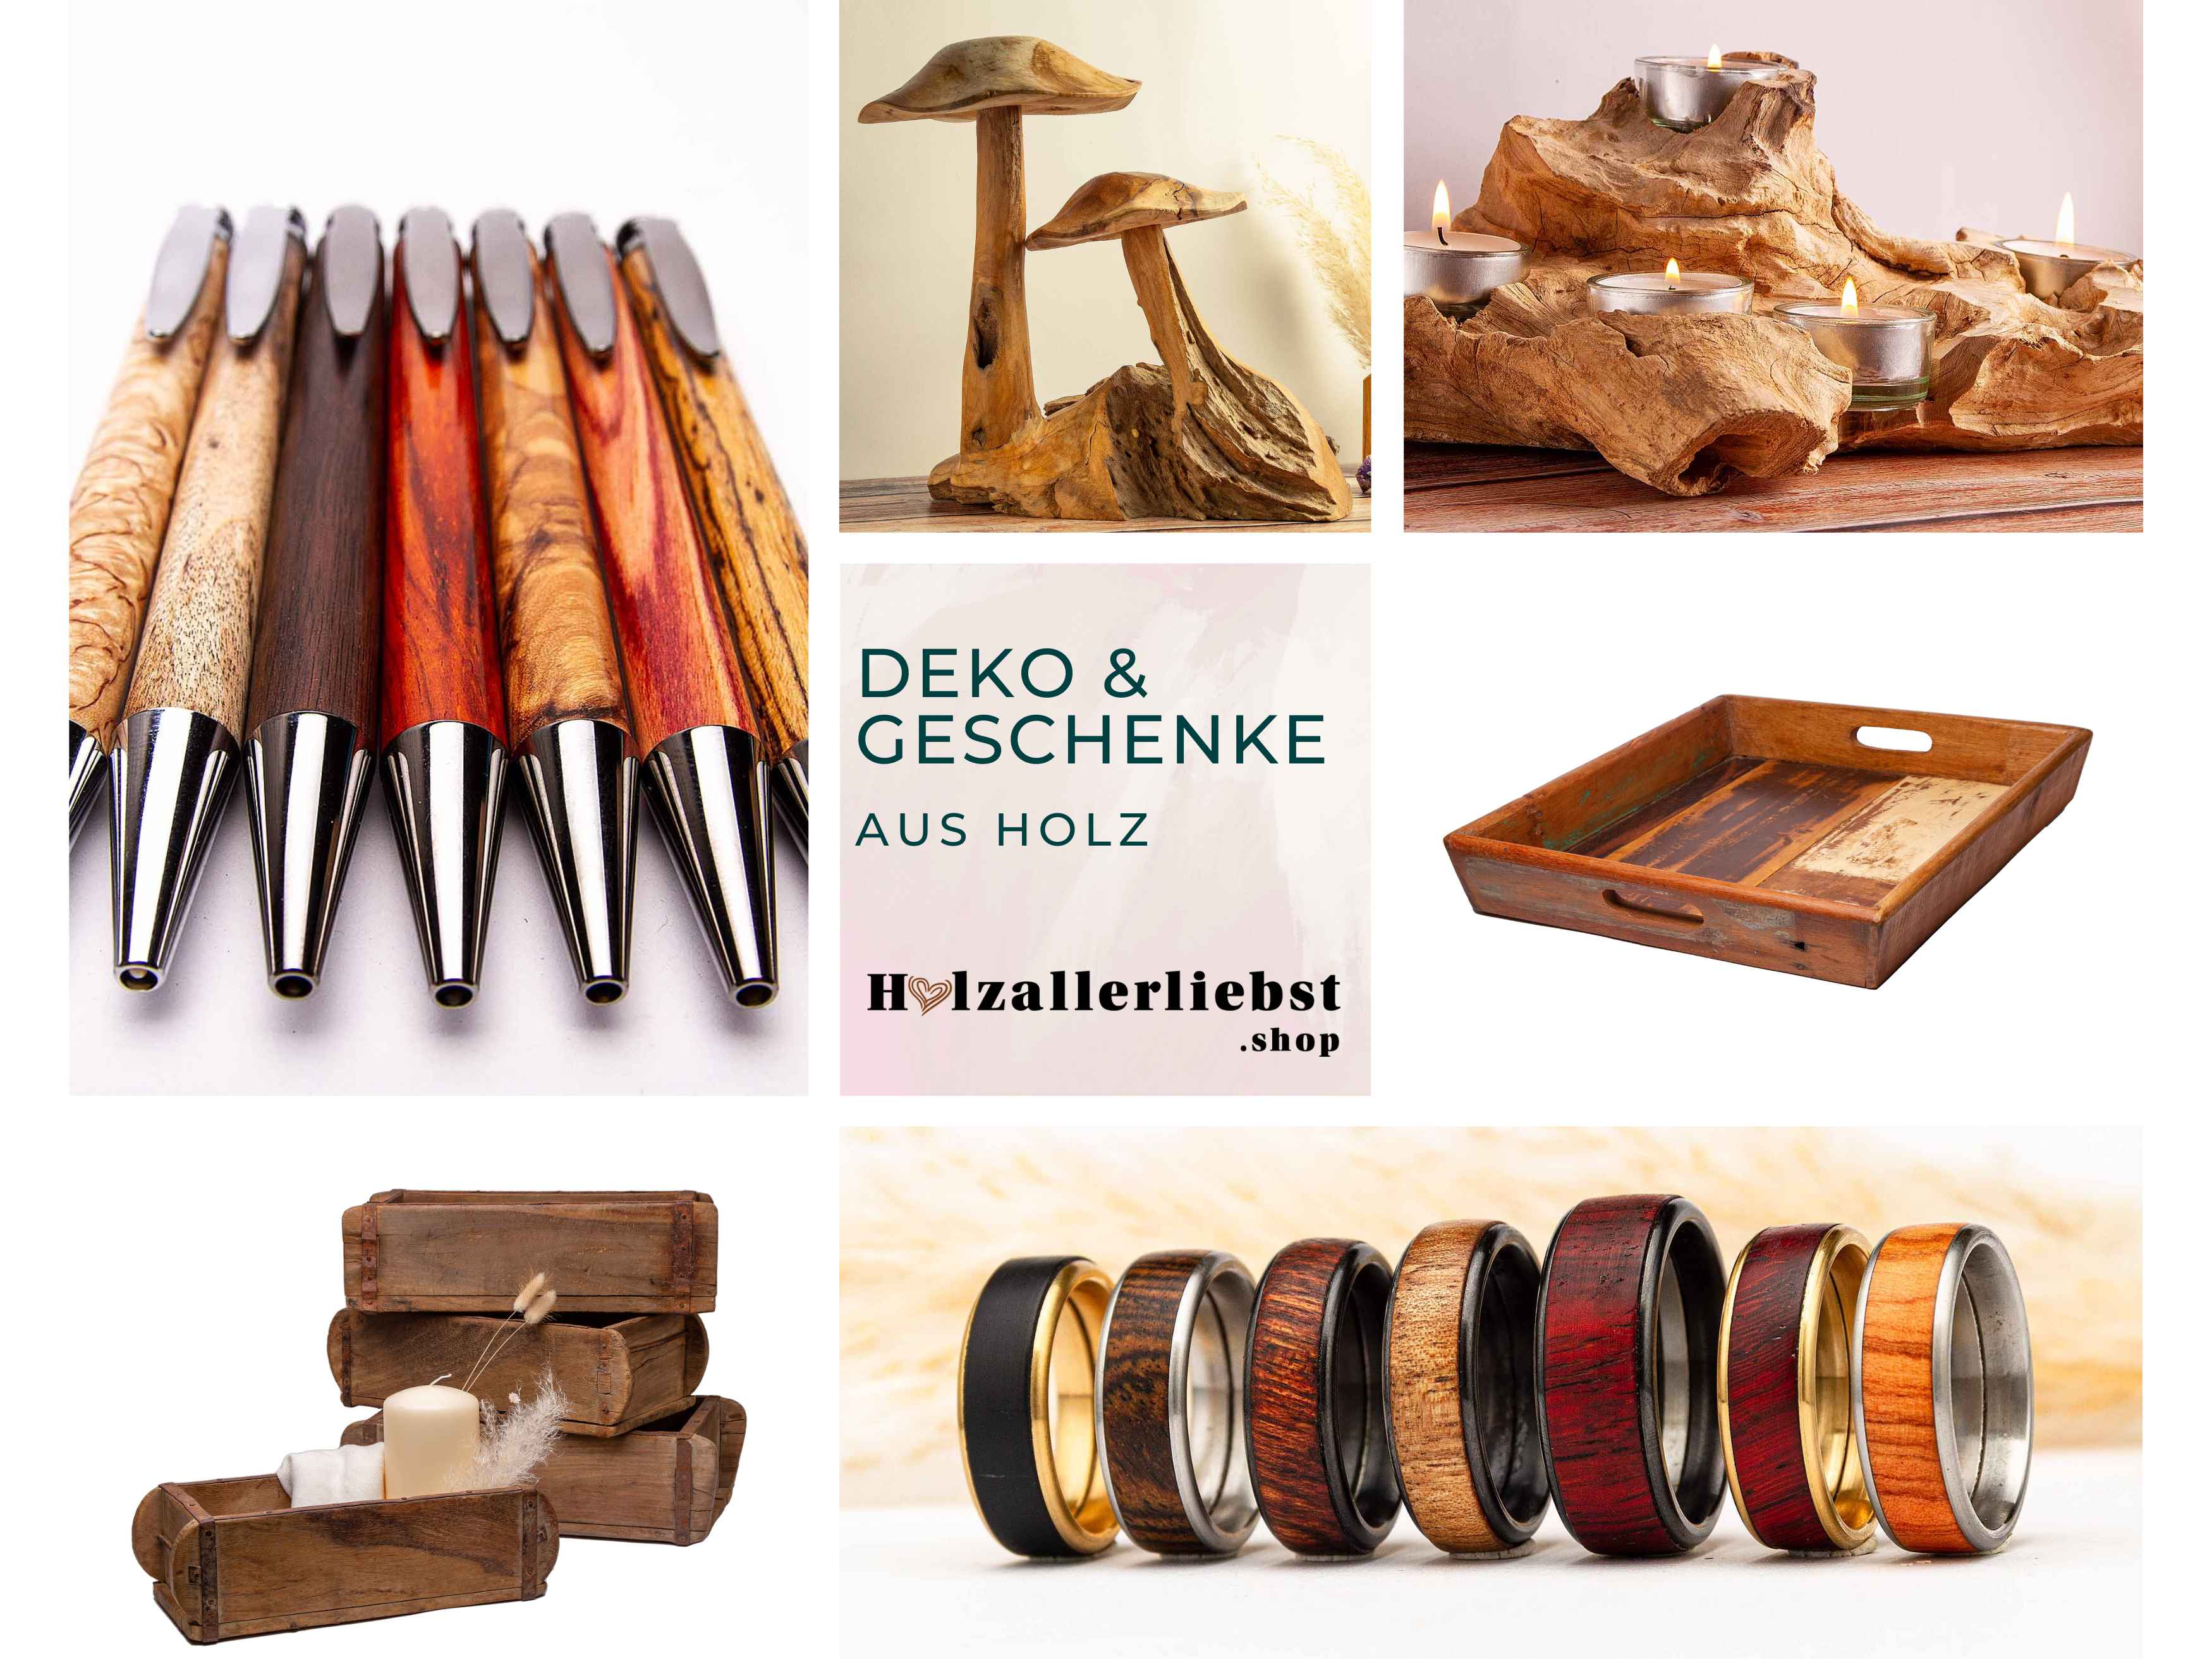 Holzdeko und Deko-Ideen - Entdecke kreative Holz deko für jeden Anlass und finde das perfekte Geschenk bei Holzallerliebst.shop.